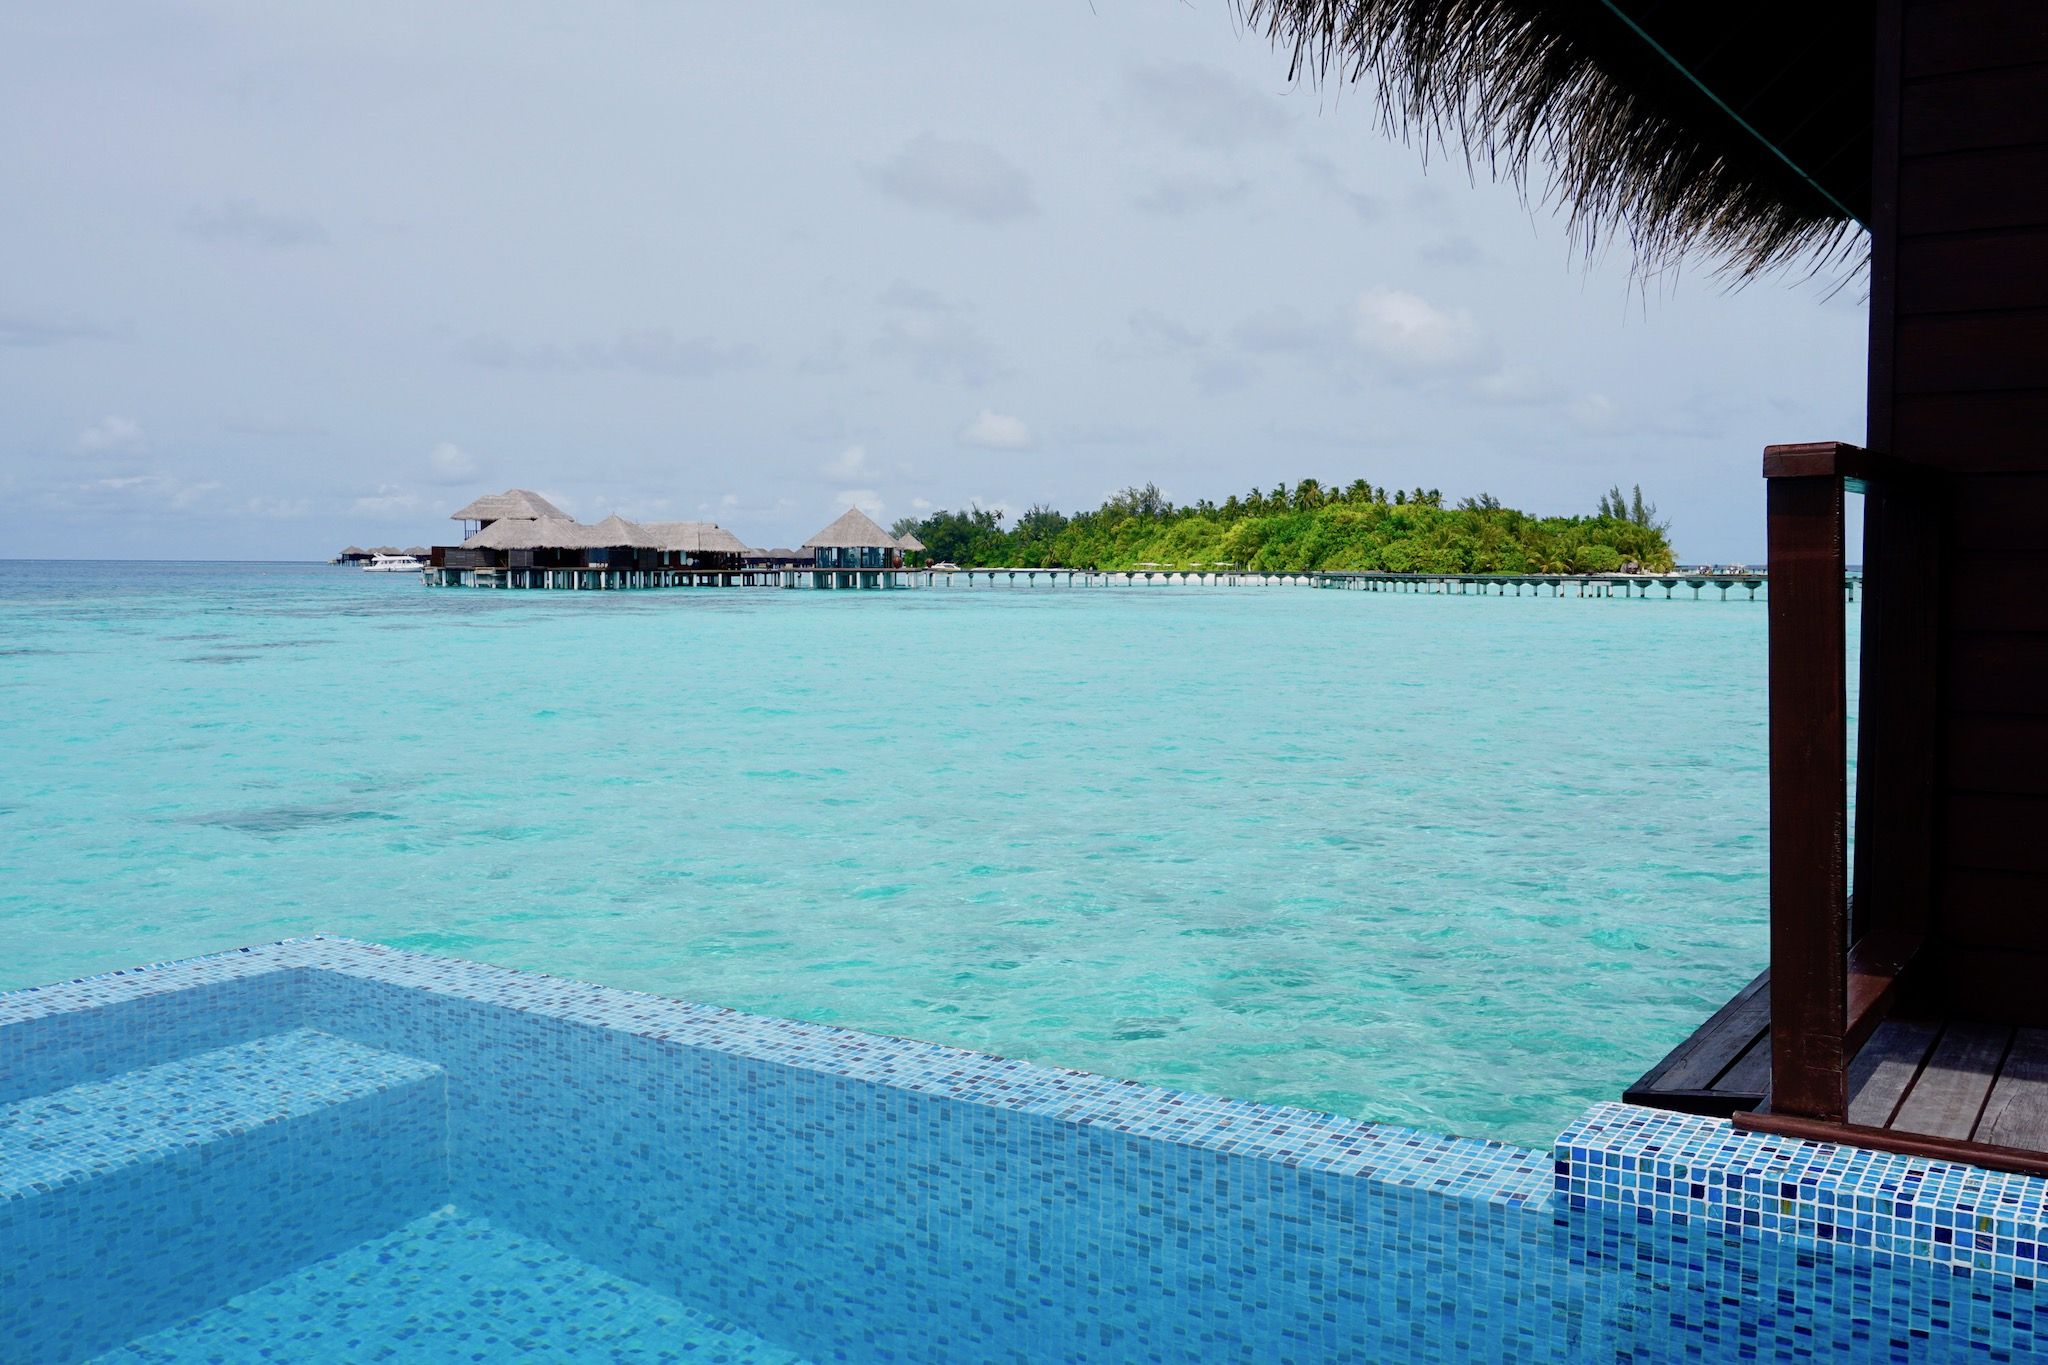 U kunt ook genieten van uw eigen reislust door te ontspannen op een eiland in de Malediven. Foto: Sascha Tegtmeyer